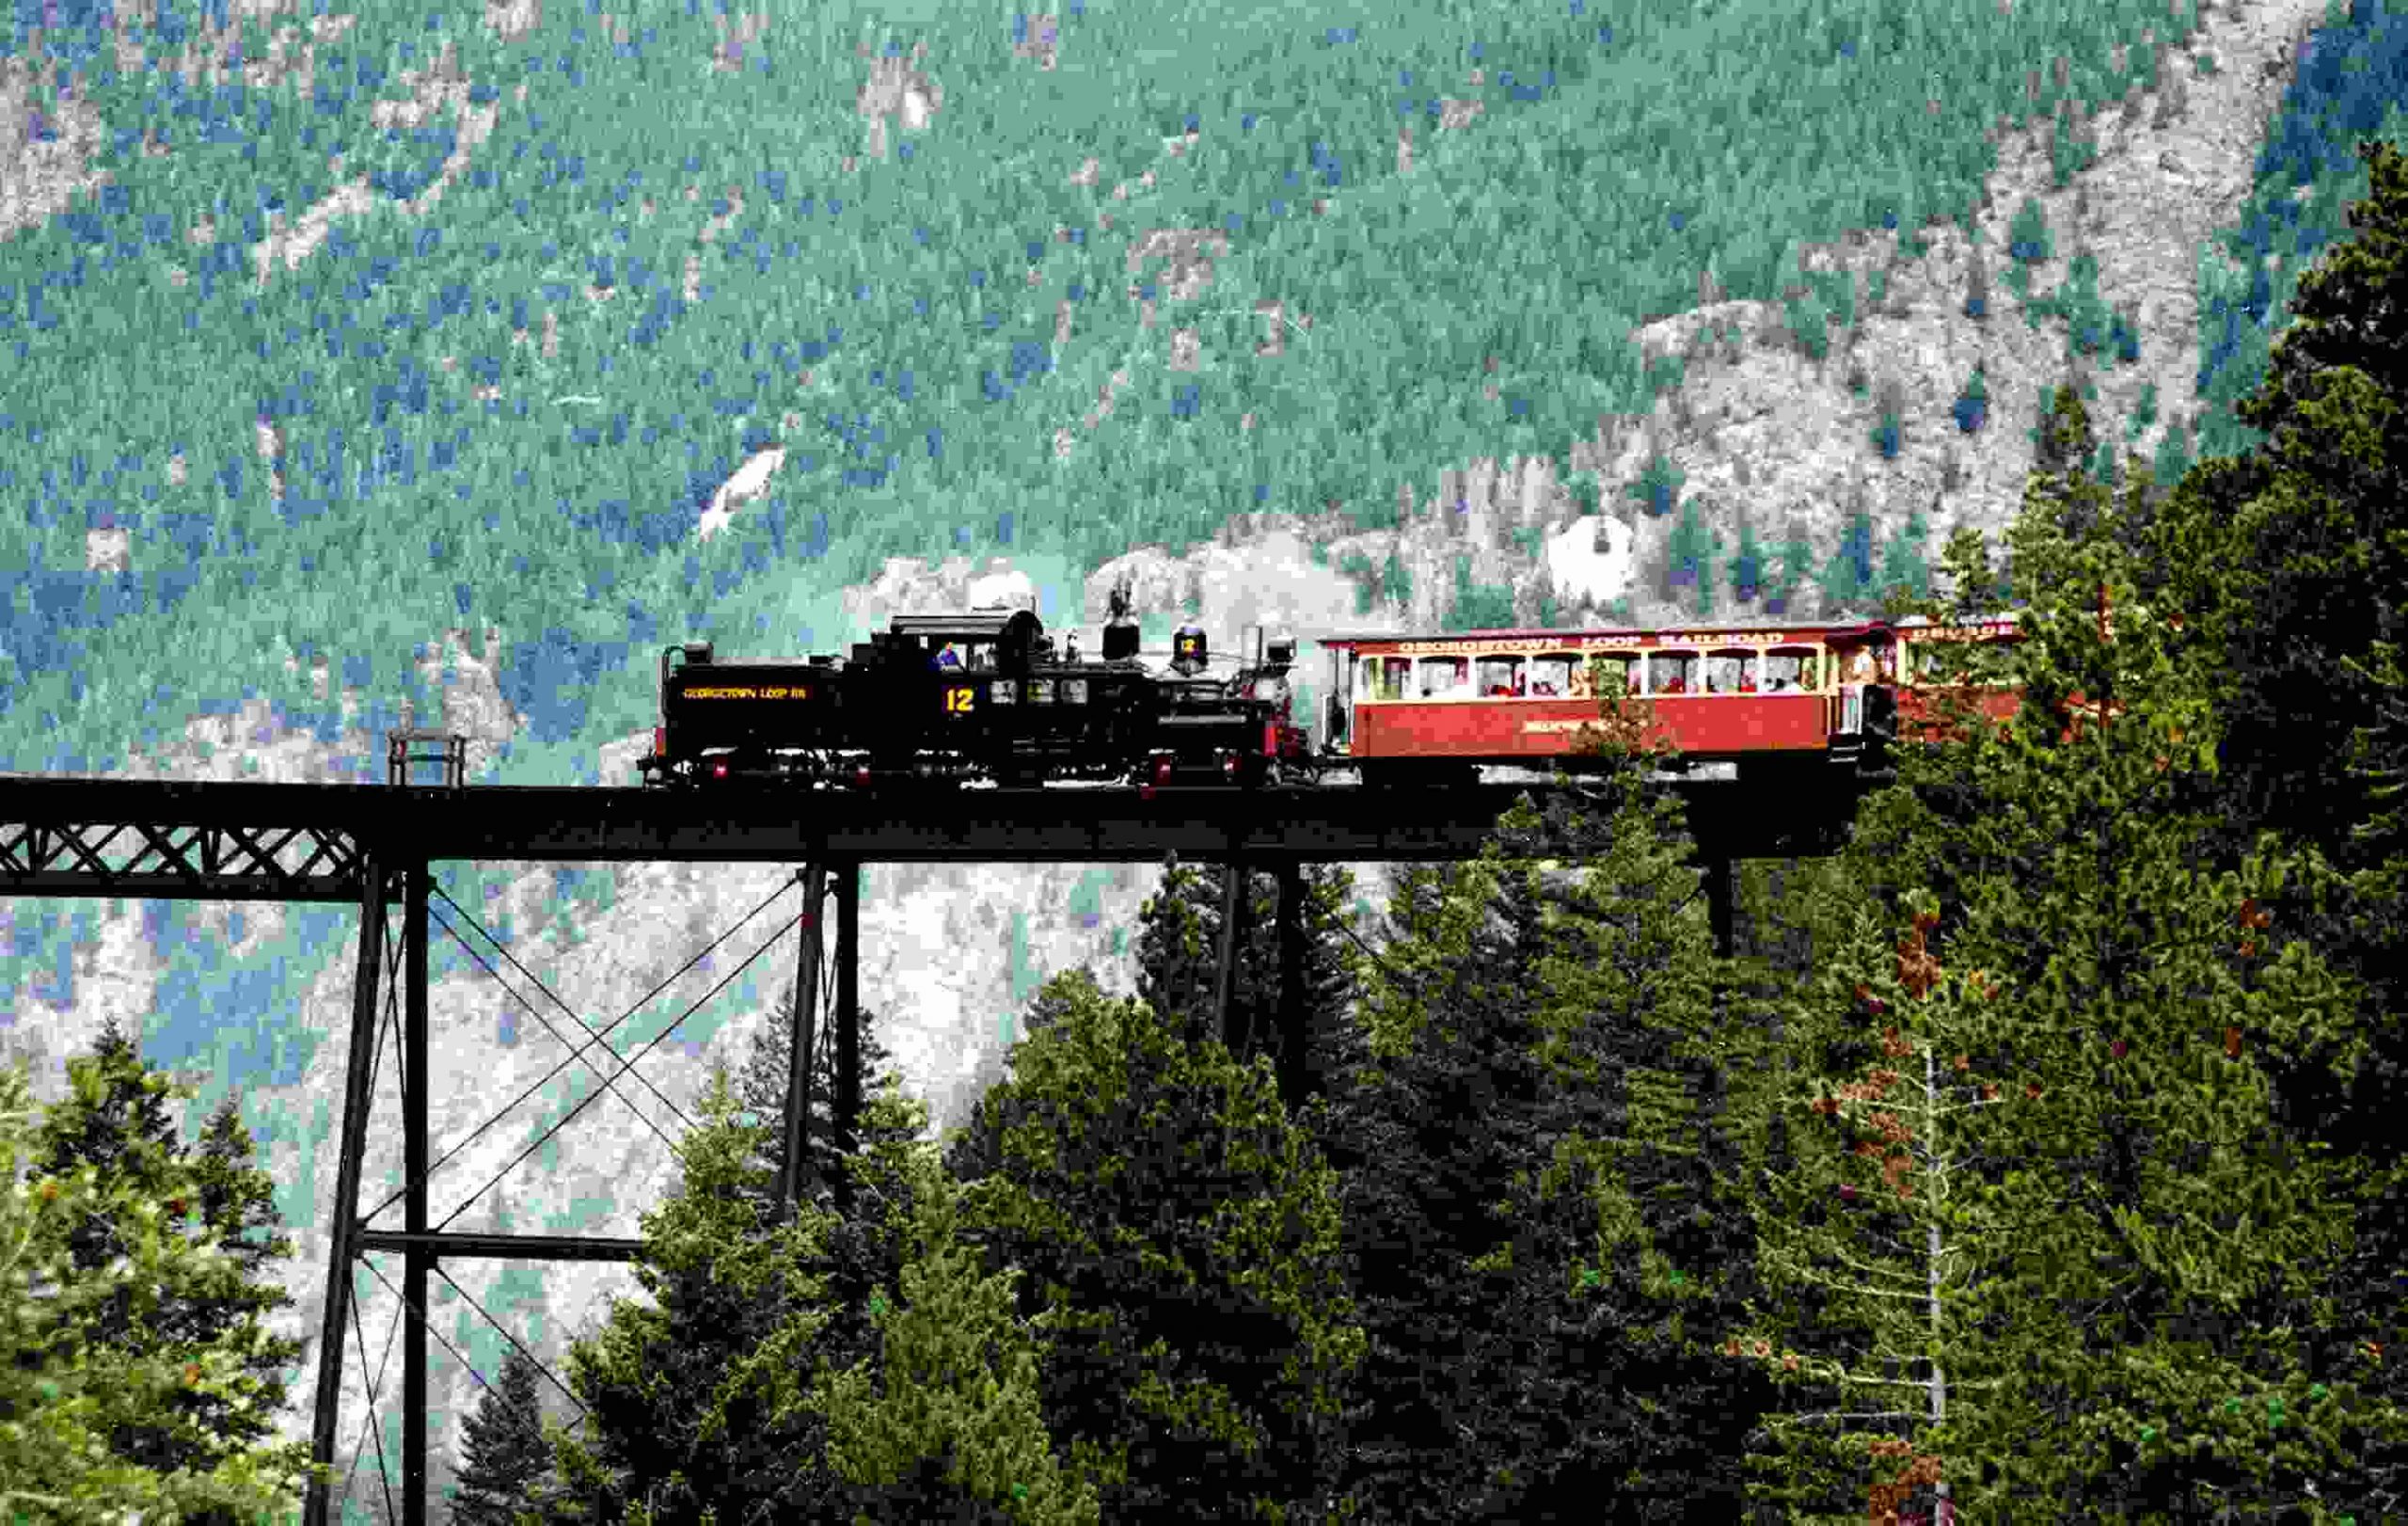 Georgetown Loop Railroad Railway Track